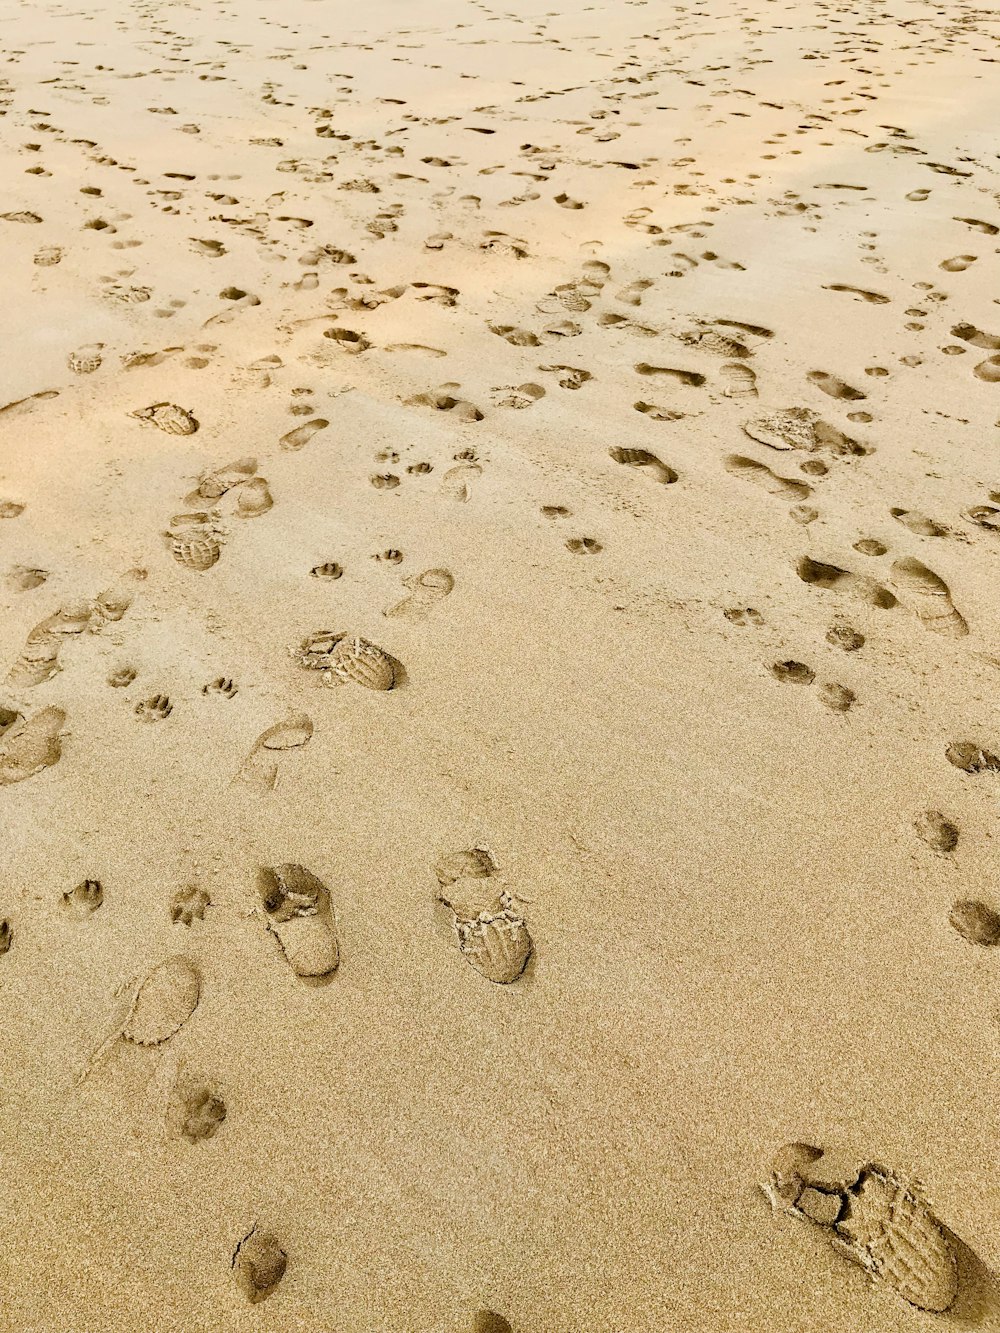 ein Sandstrand mit vielen Fußabdrücken bedeckt